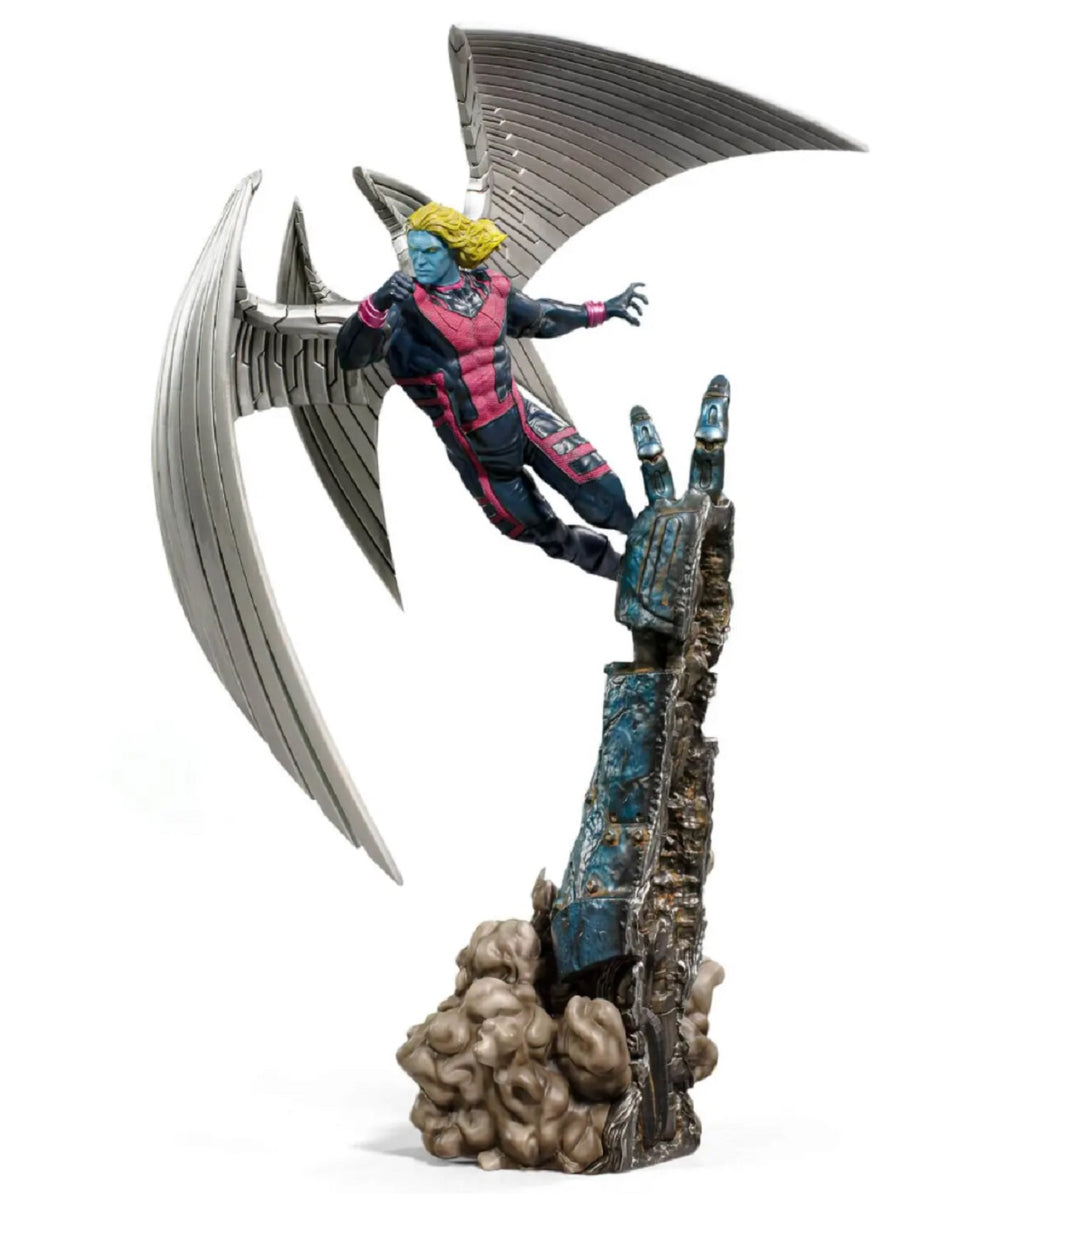 X-Men Archangel Marvel Comics BDS Art Scale 1/10 Statue